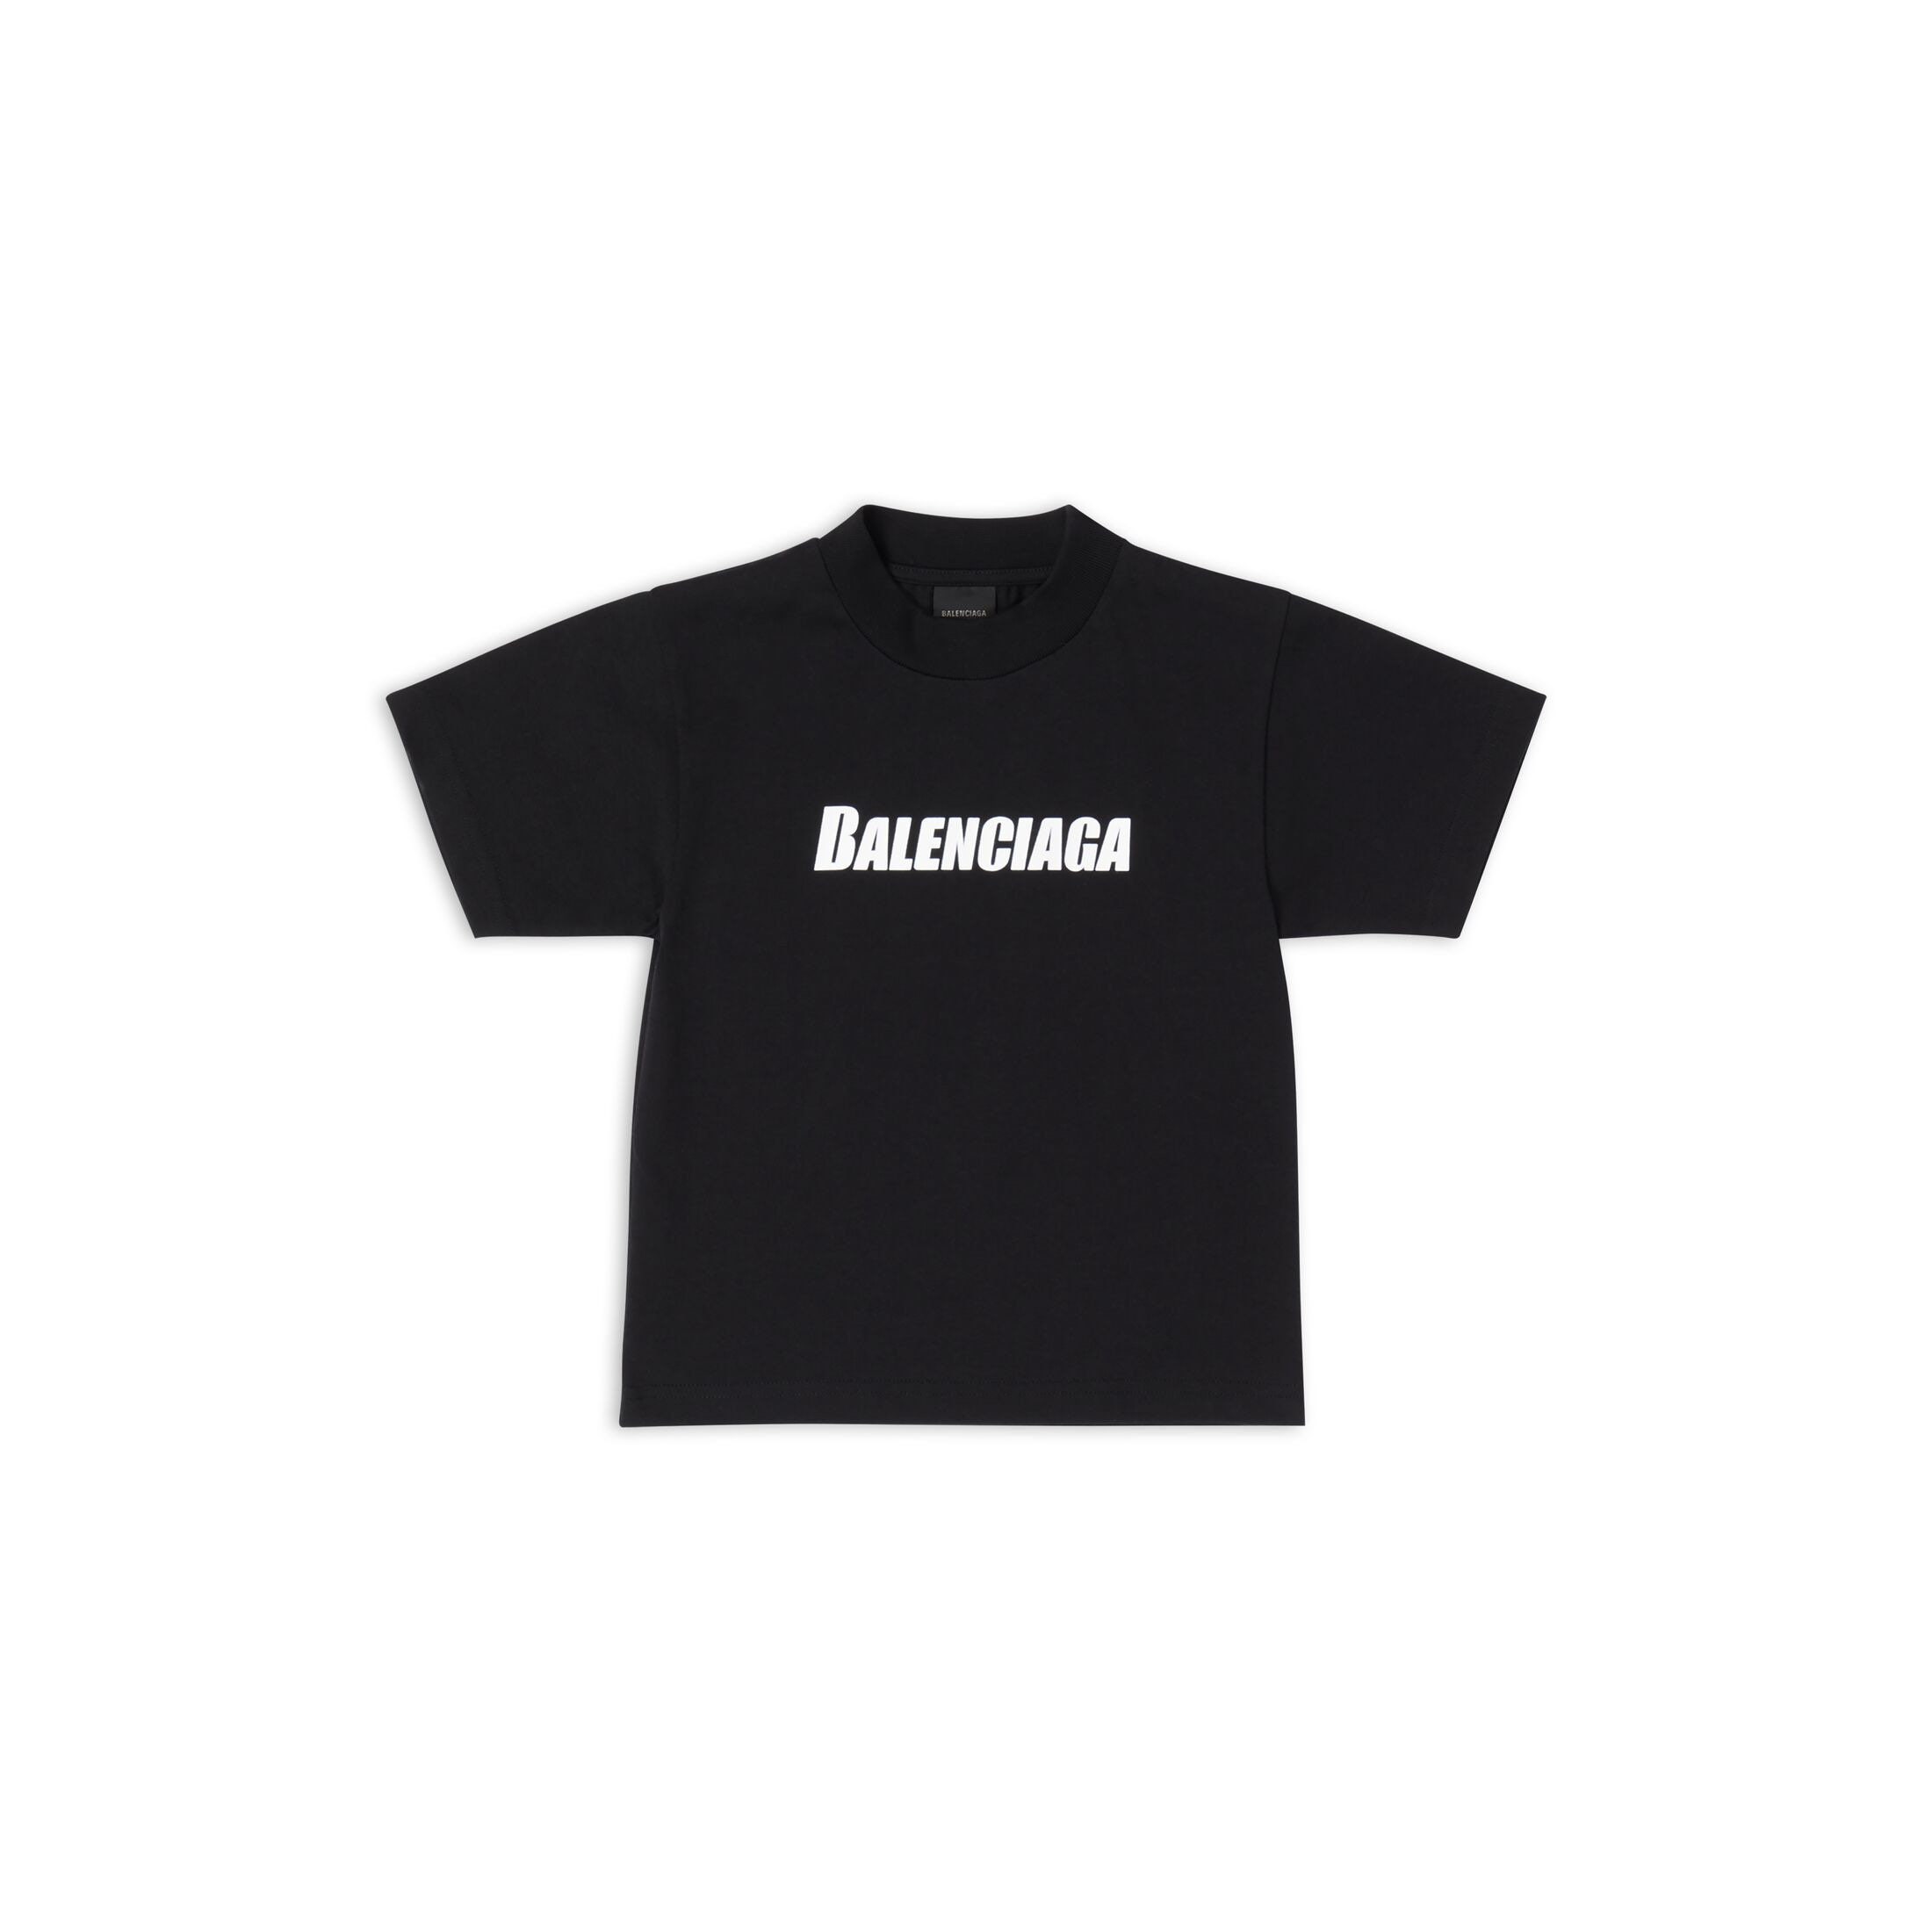 præcedens Stoop leder Balenciaga T Shirt - Etsy